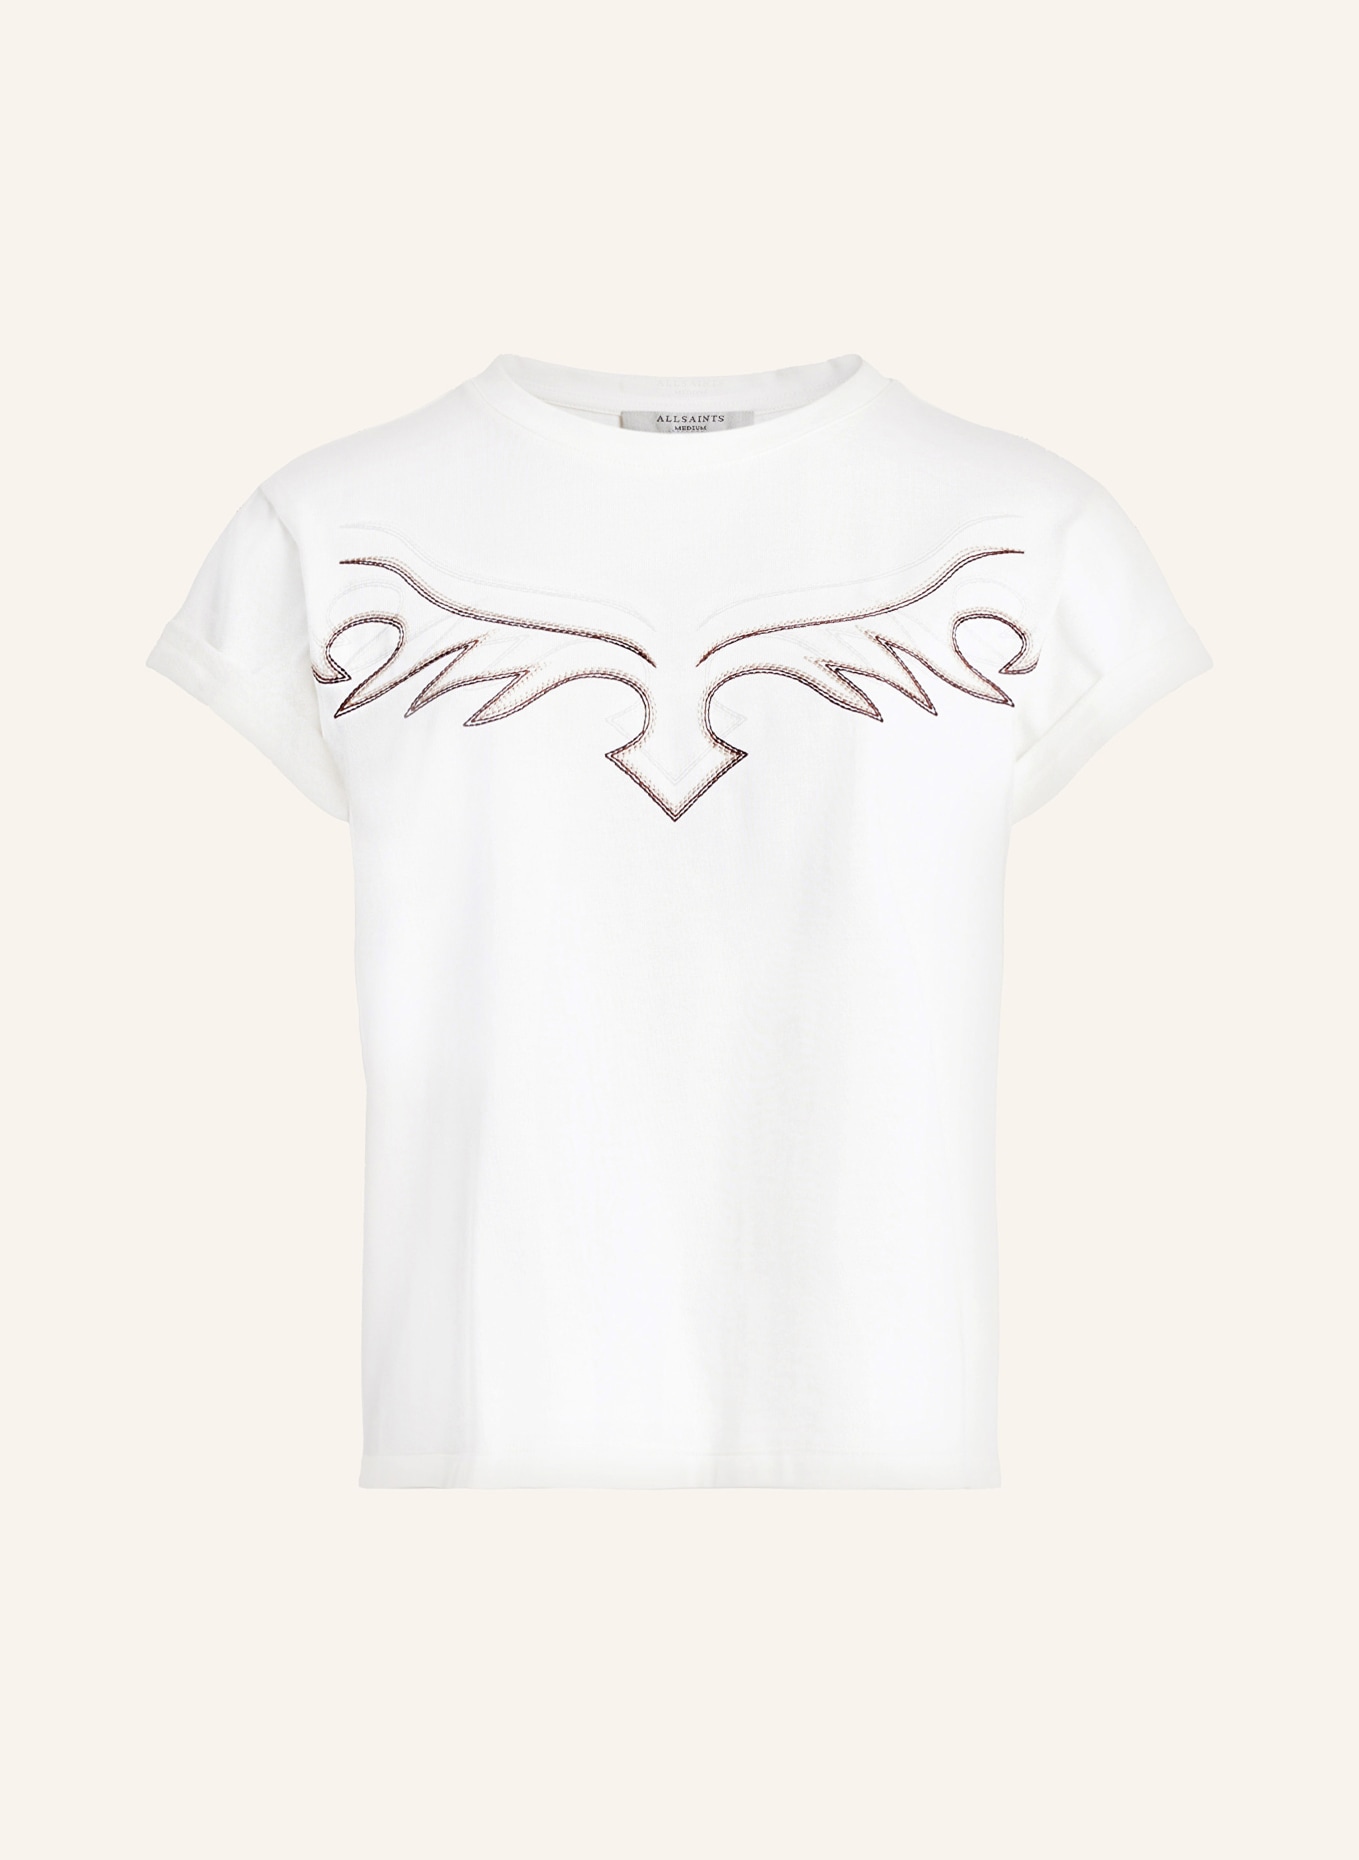 ALLSAINTS T-Shirt RANDAL ANNA, Farbe: WEISS (Bild 1)